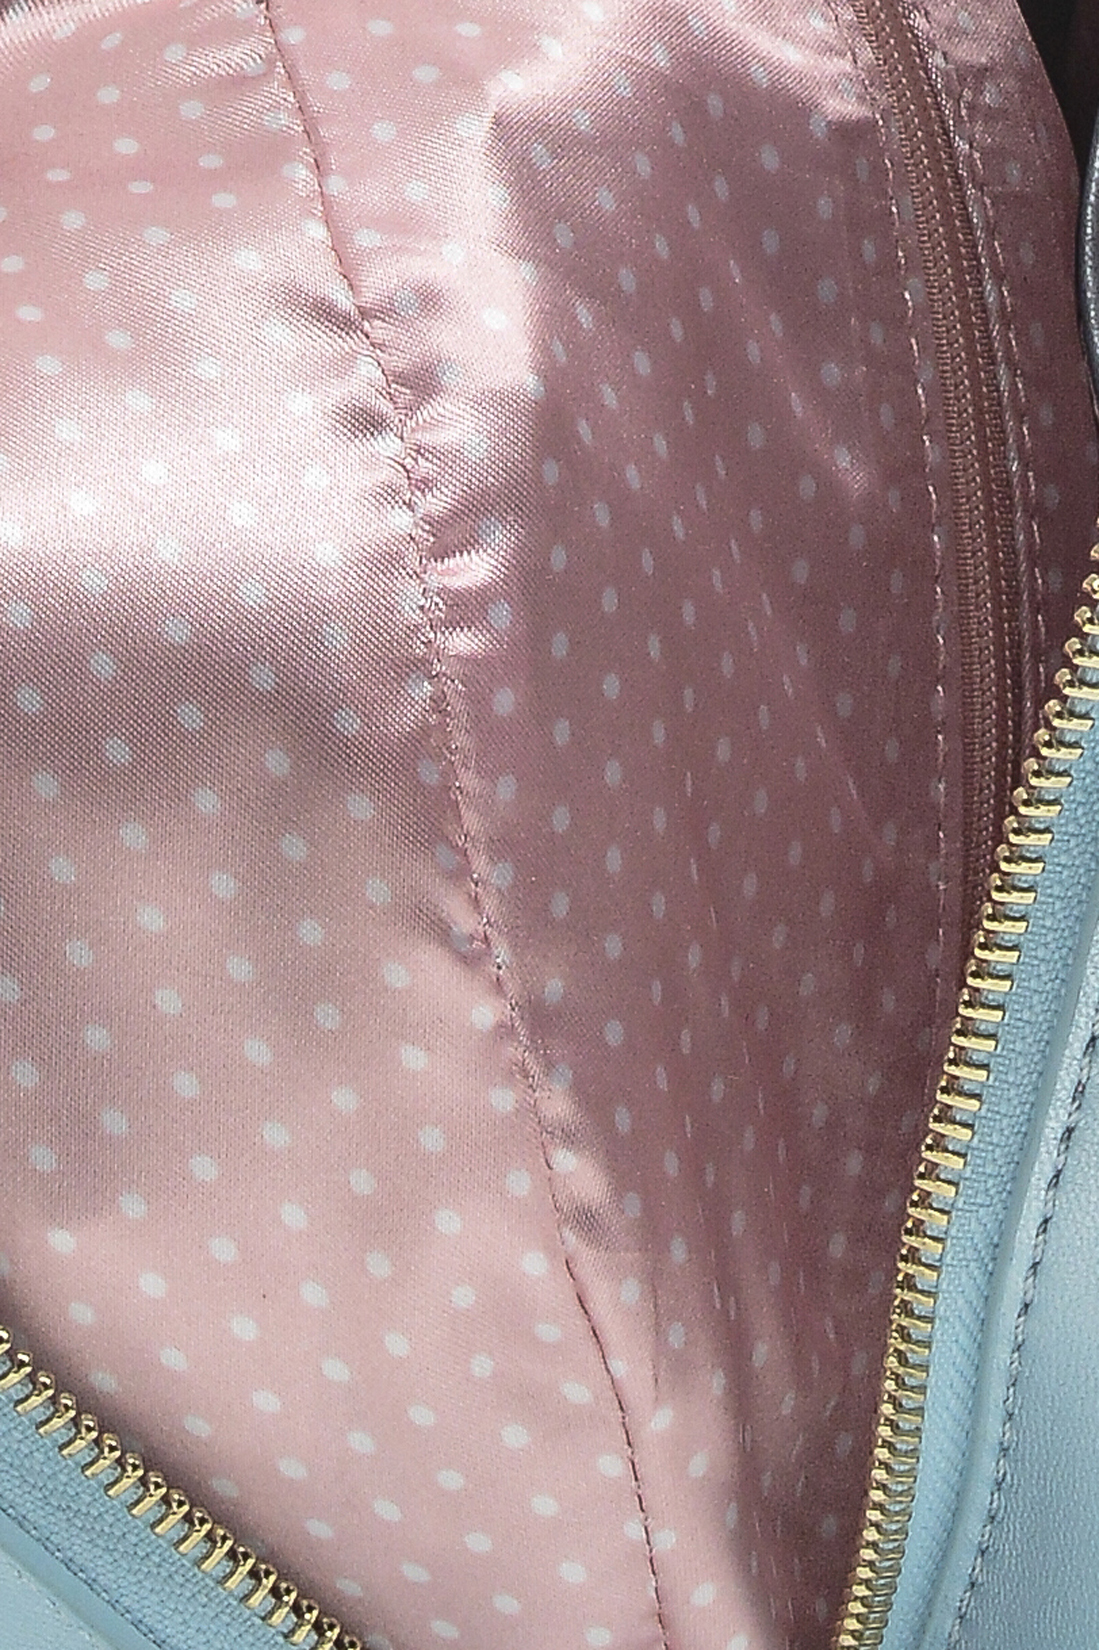 Рюкзак с перламутровым эффектом (арт. baon B379001), размер Без/раз, цвет голубой Рюкзак с перламутровым эффектом (арт. baon B379001) - фото 3